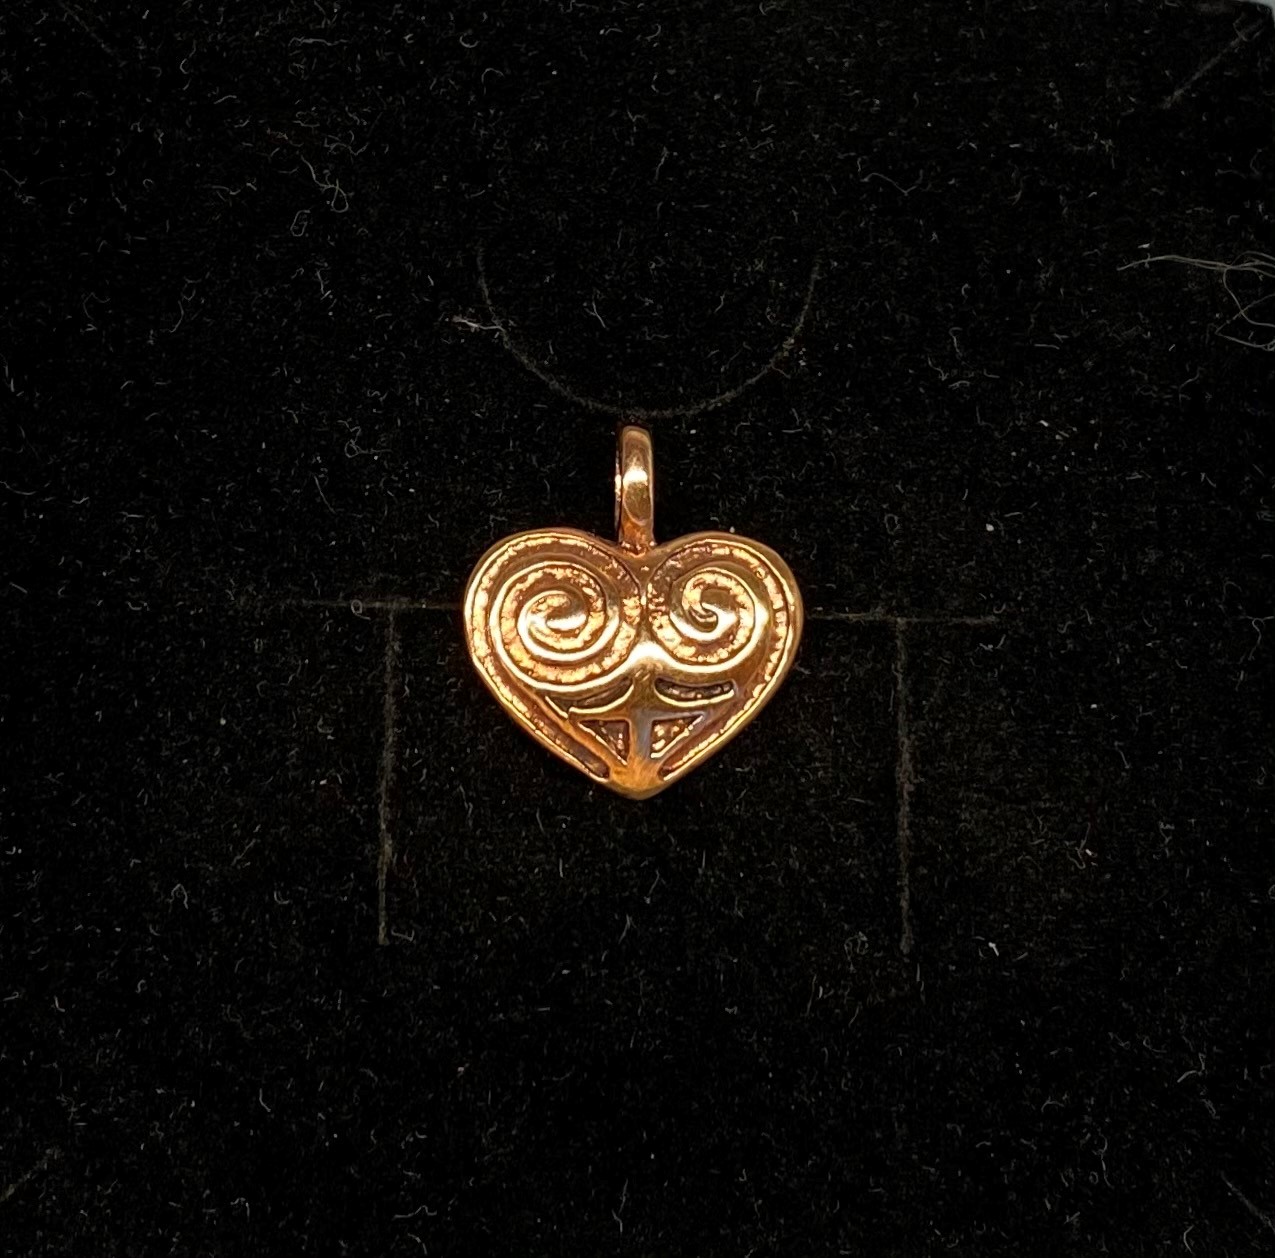 Bronze Vedhæng - Hjerte Amulet, museumssmykker, hjerte, hjertevedhæng, amulet, kærlighed, valentine, bryllup, smykke, bronze, keltisk, vikingefund, vikingesmykker, vikingevedhæng, vedhæng, bronze, specielt, flot, vadehavet, ansgar, ribe, biti, hjerteamulet, hjertesmykke, halskæde, gyldent, kobber